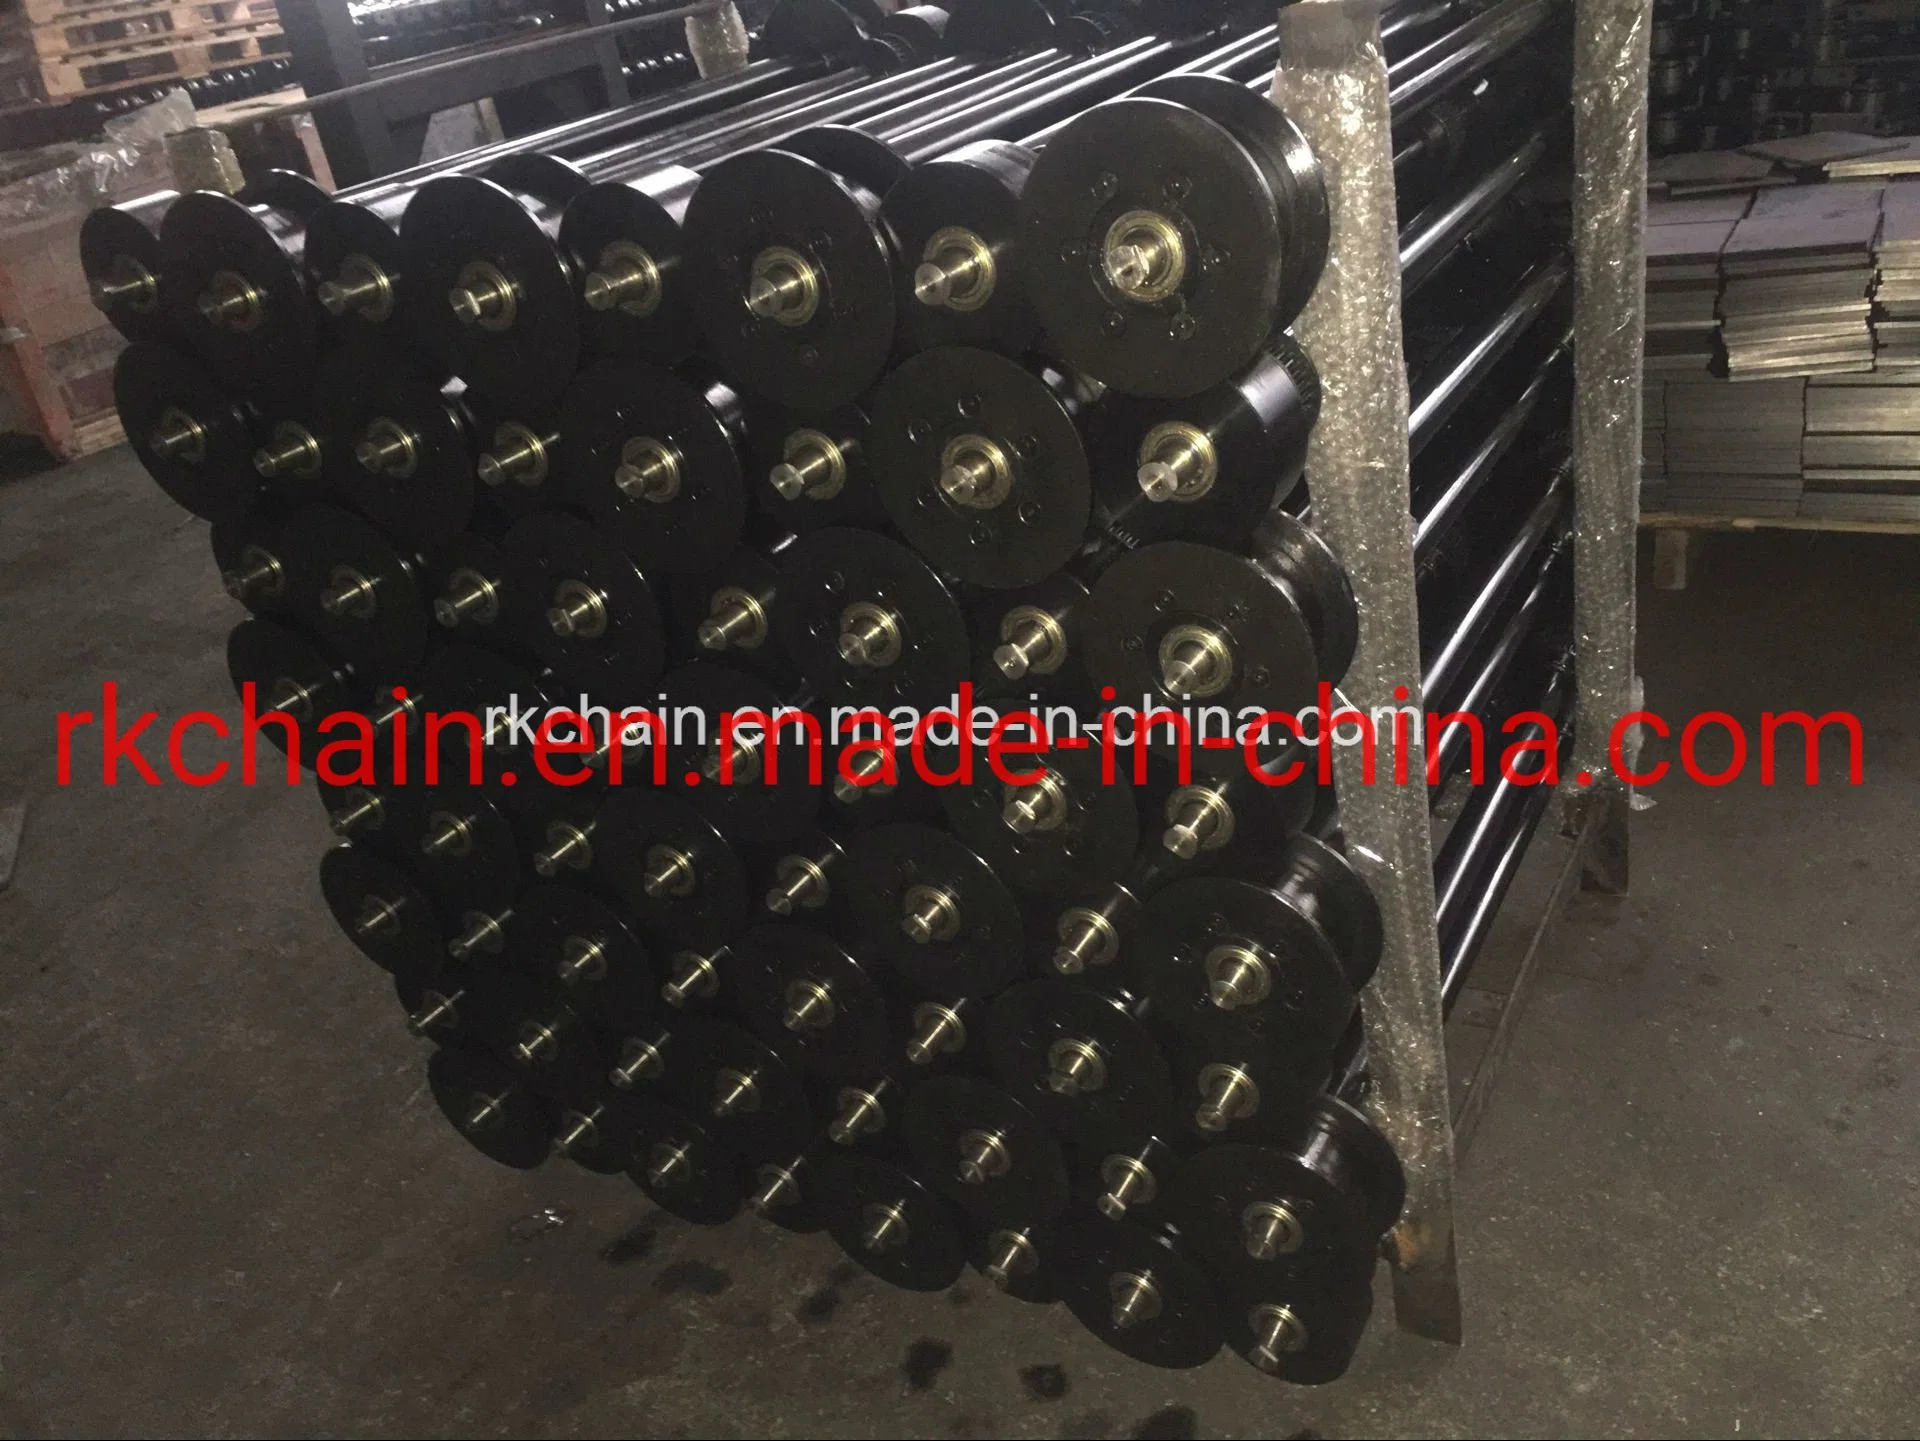 Top Quality Conveyor Roller, Steel Roller, Roller Conveyor, Transmission Roller for Conveyor System